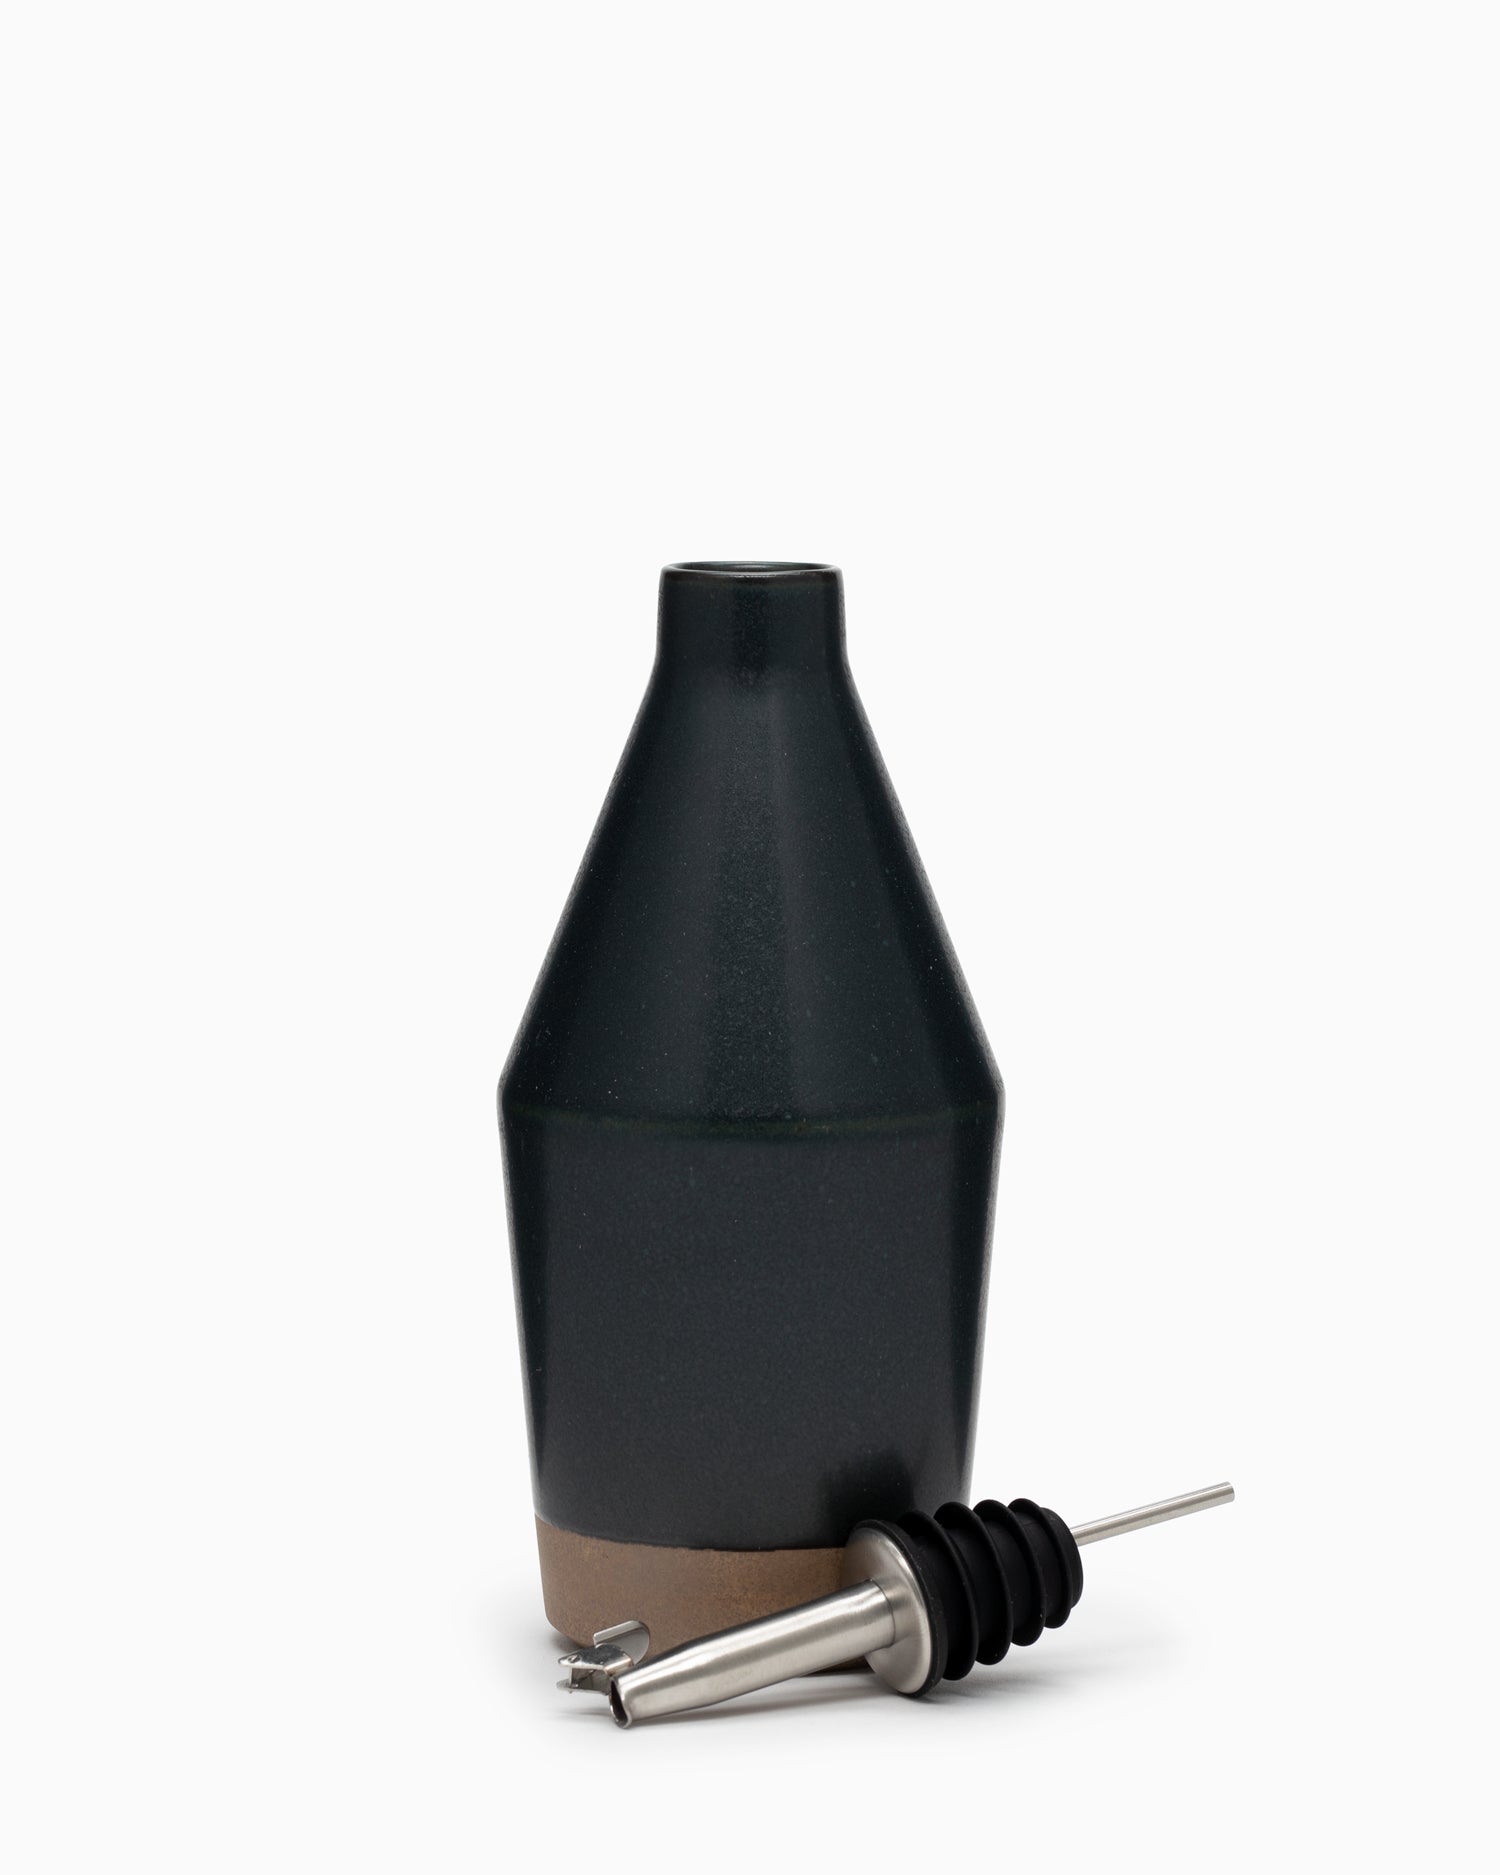 CLK-211 Oil Bottle 300ml Black